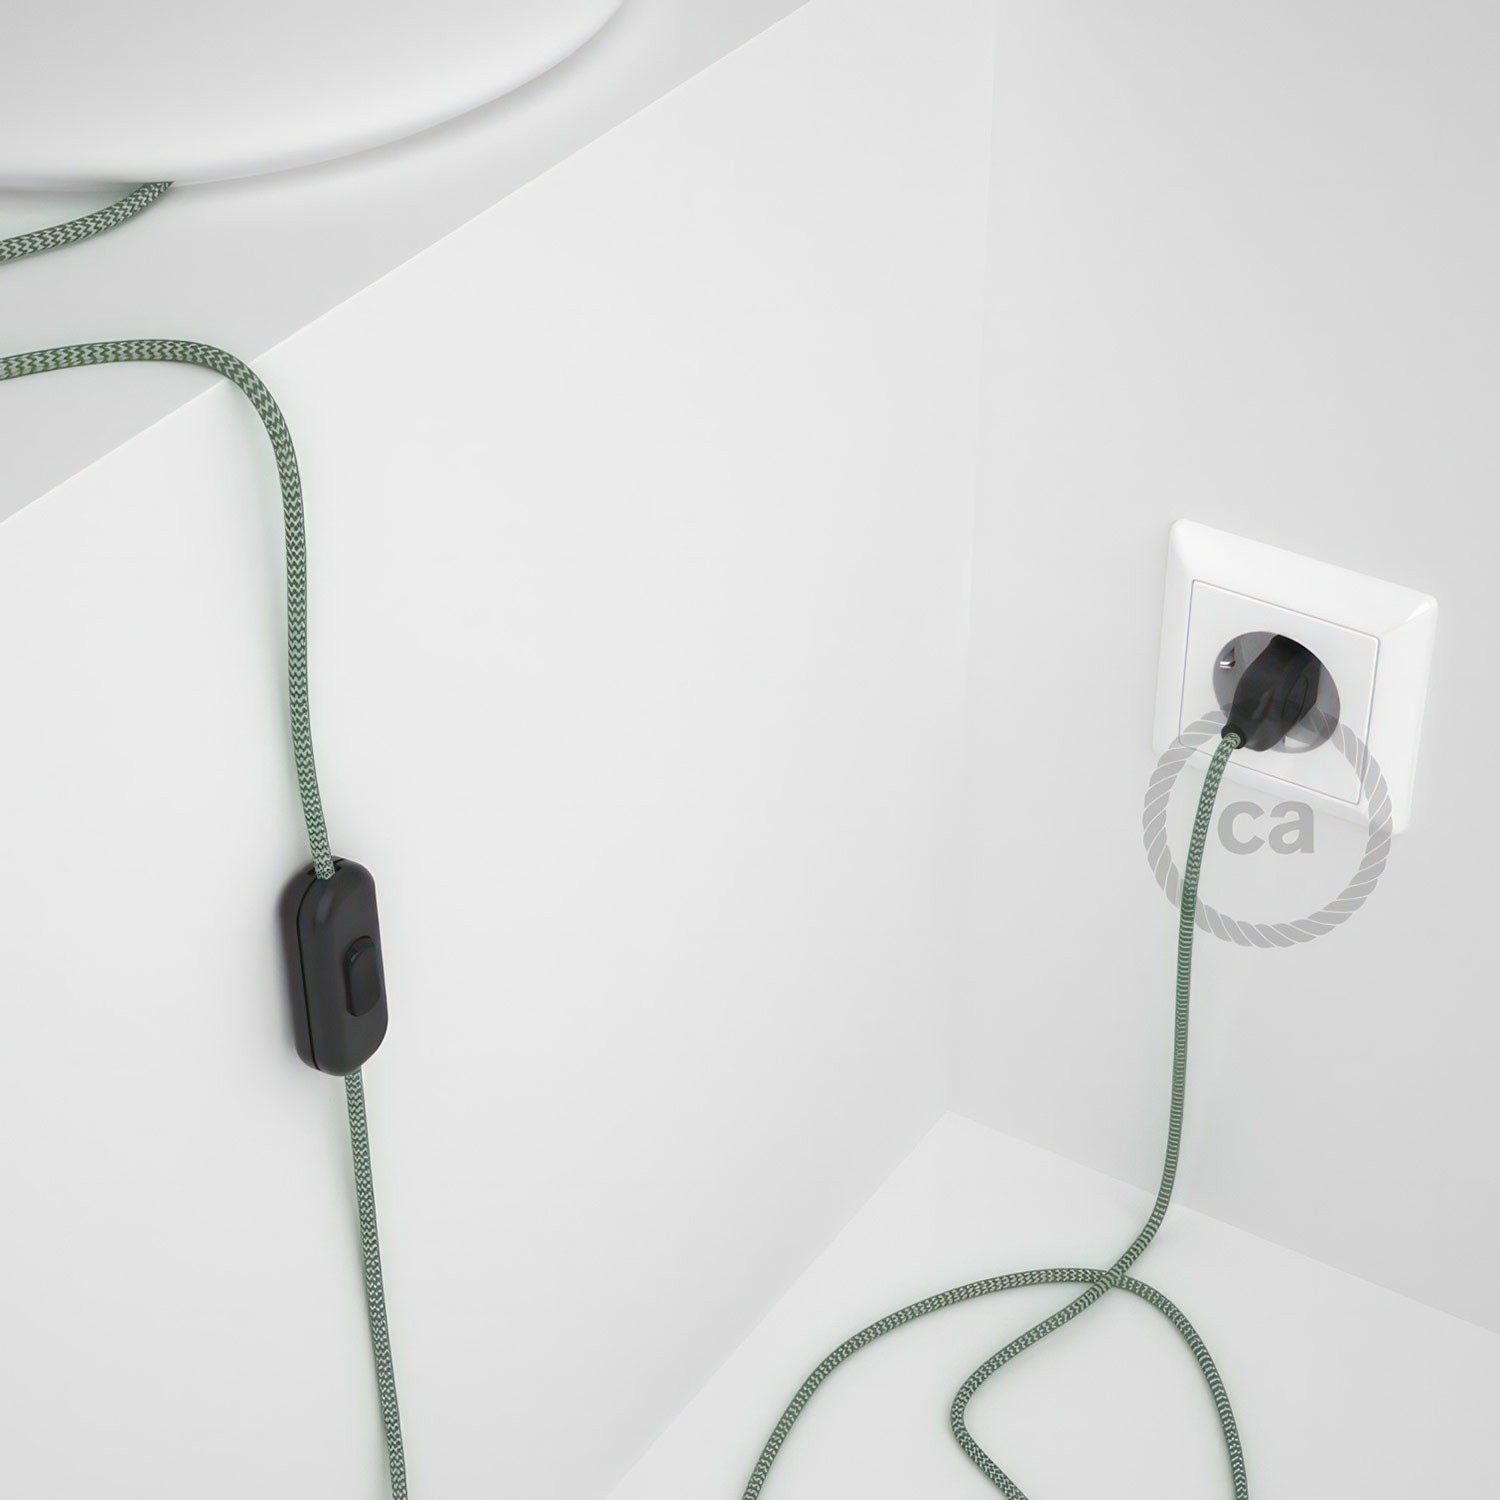 Cableado para lámpara, cable RZ06 Efecto Seda ZigZag Blanco Verde 1,8m. Elige tu el color de la clavija y del interruptor!